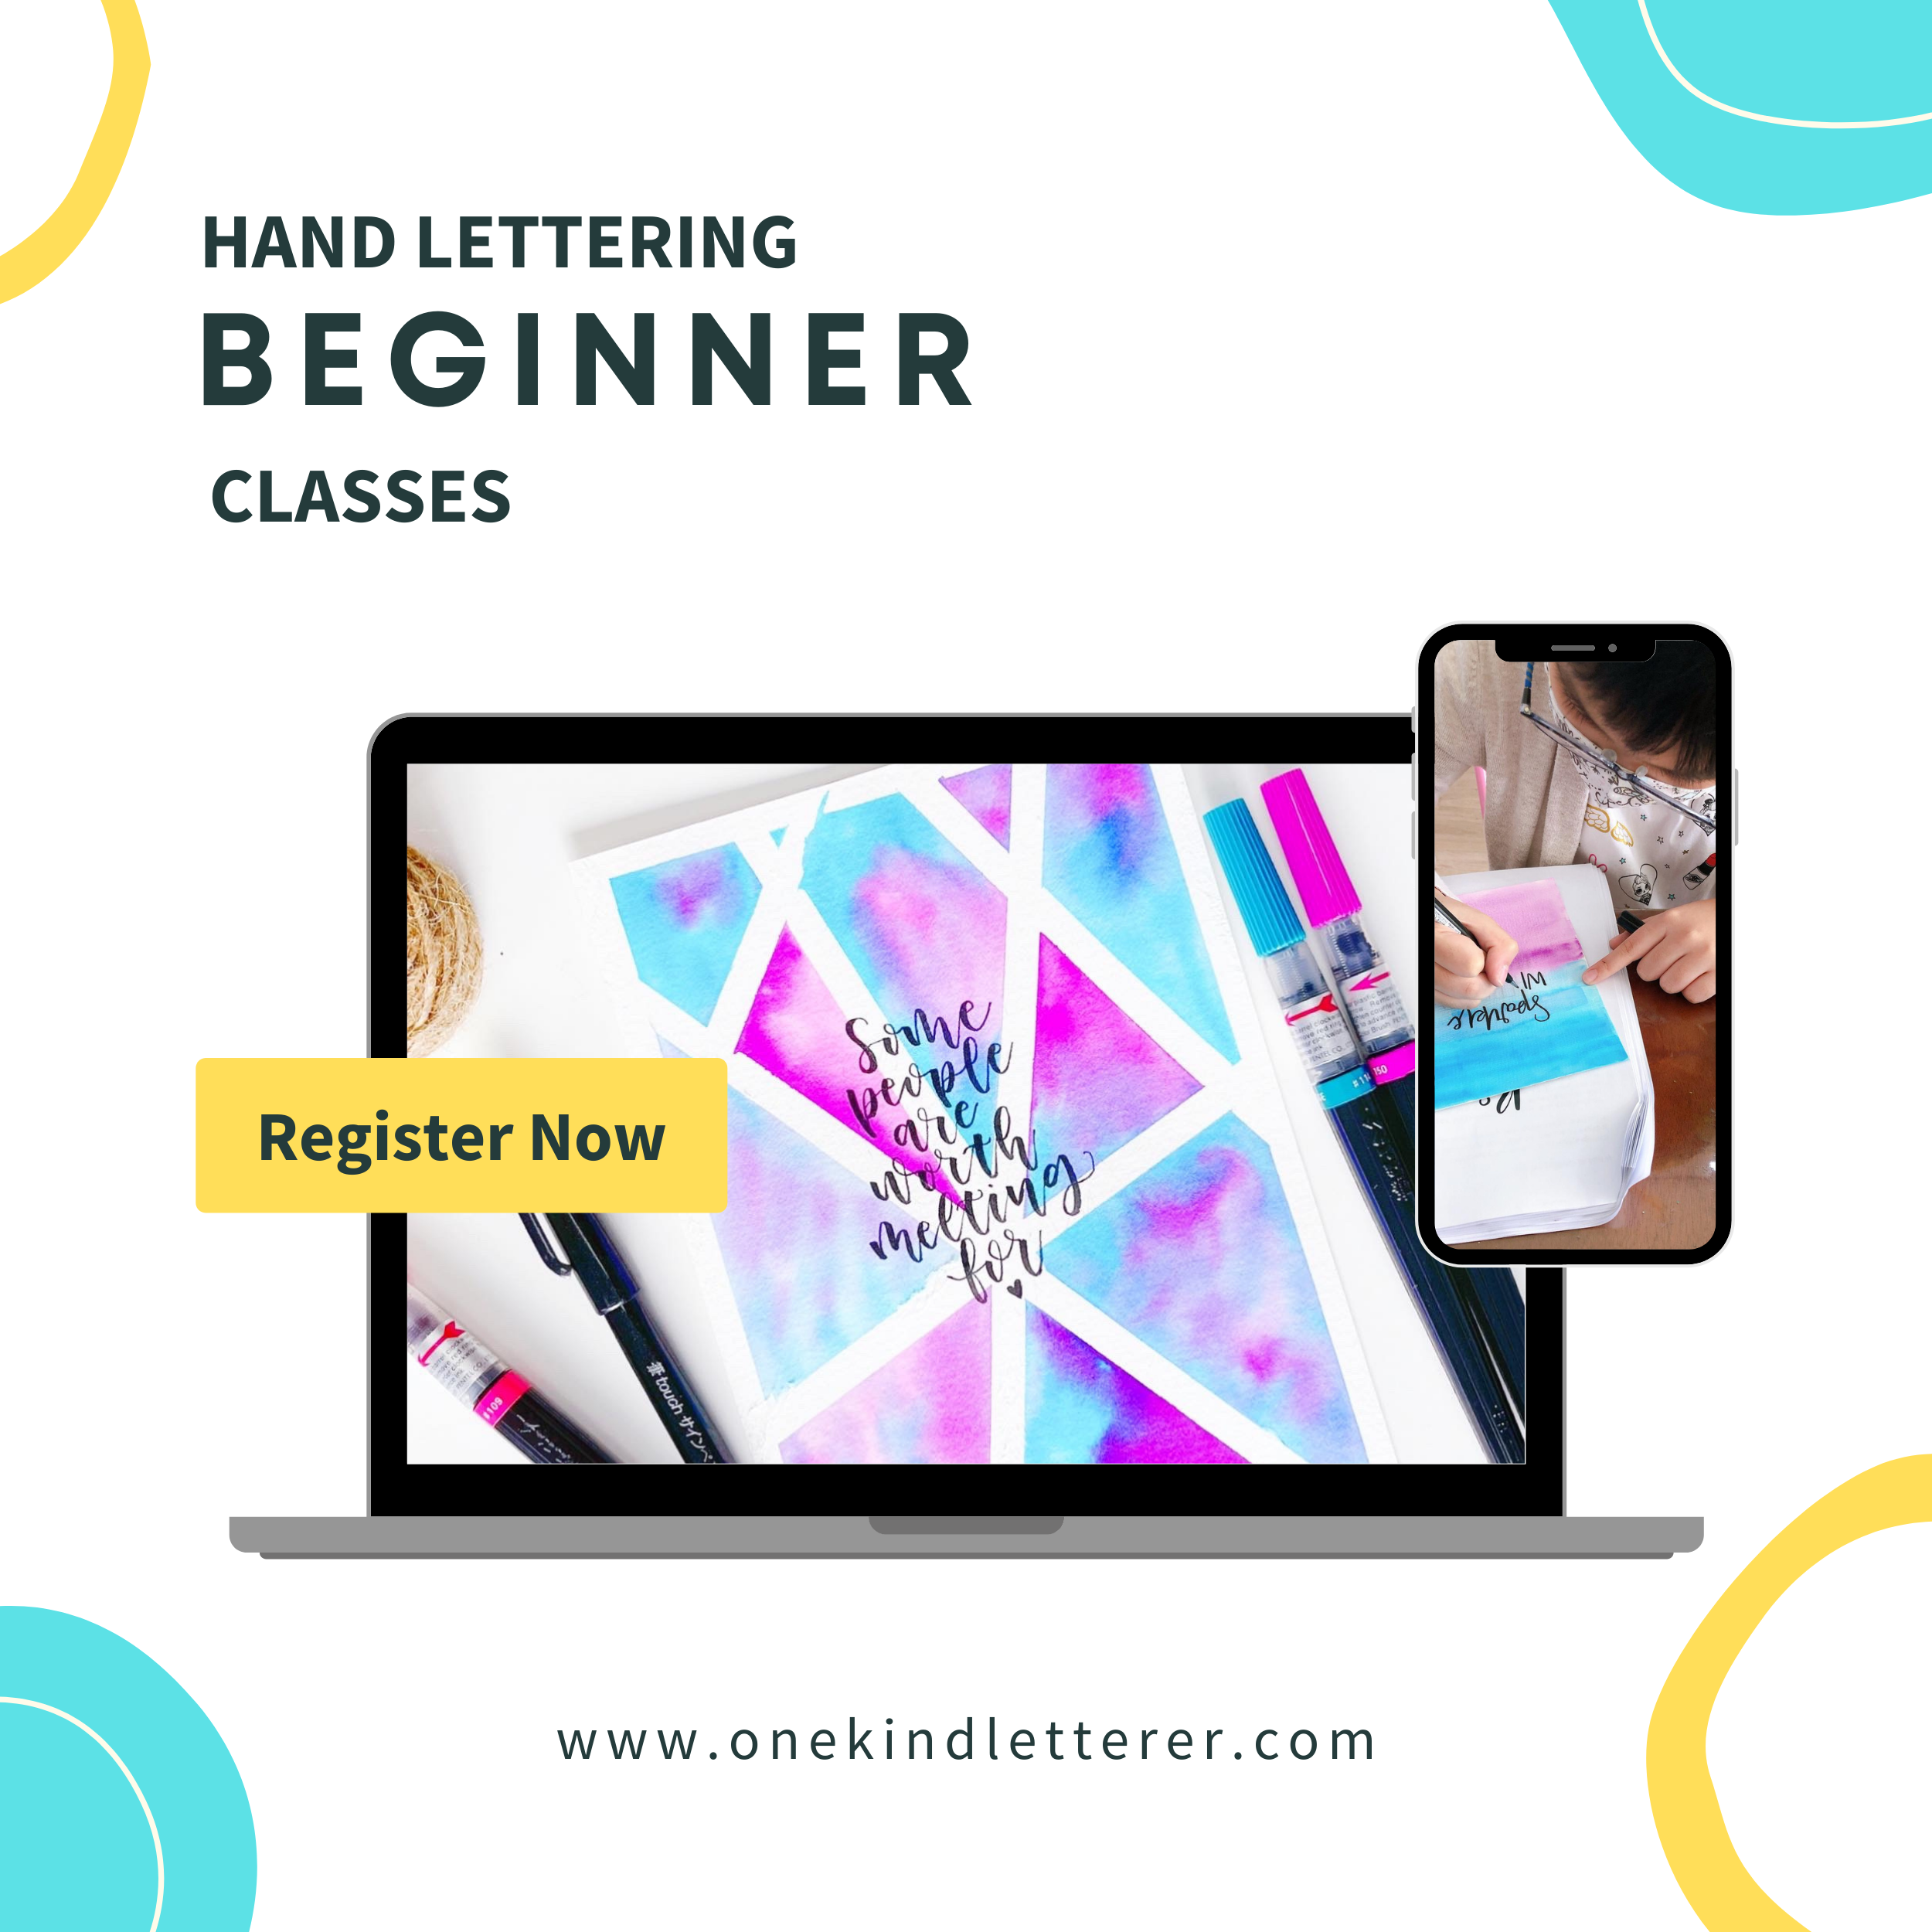 Hand Lettering Beginner classes for kids